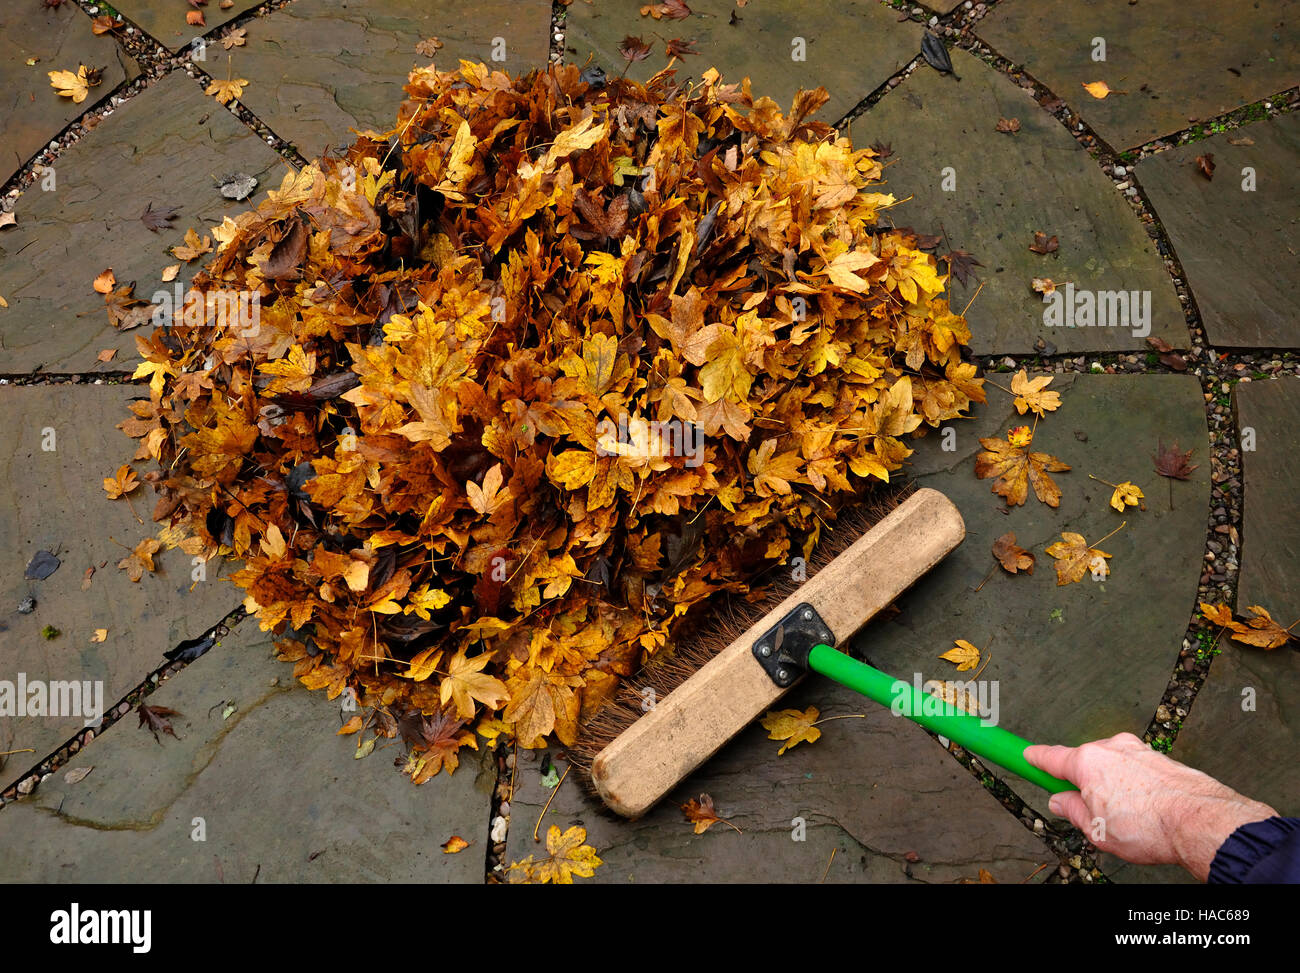 Brushing up autumn leaves Stock Photo - Alamy